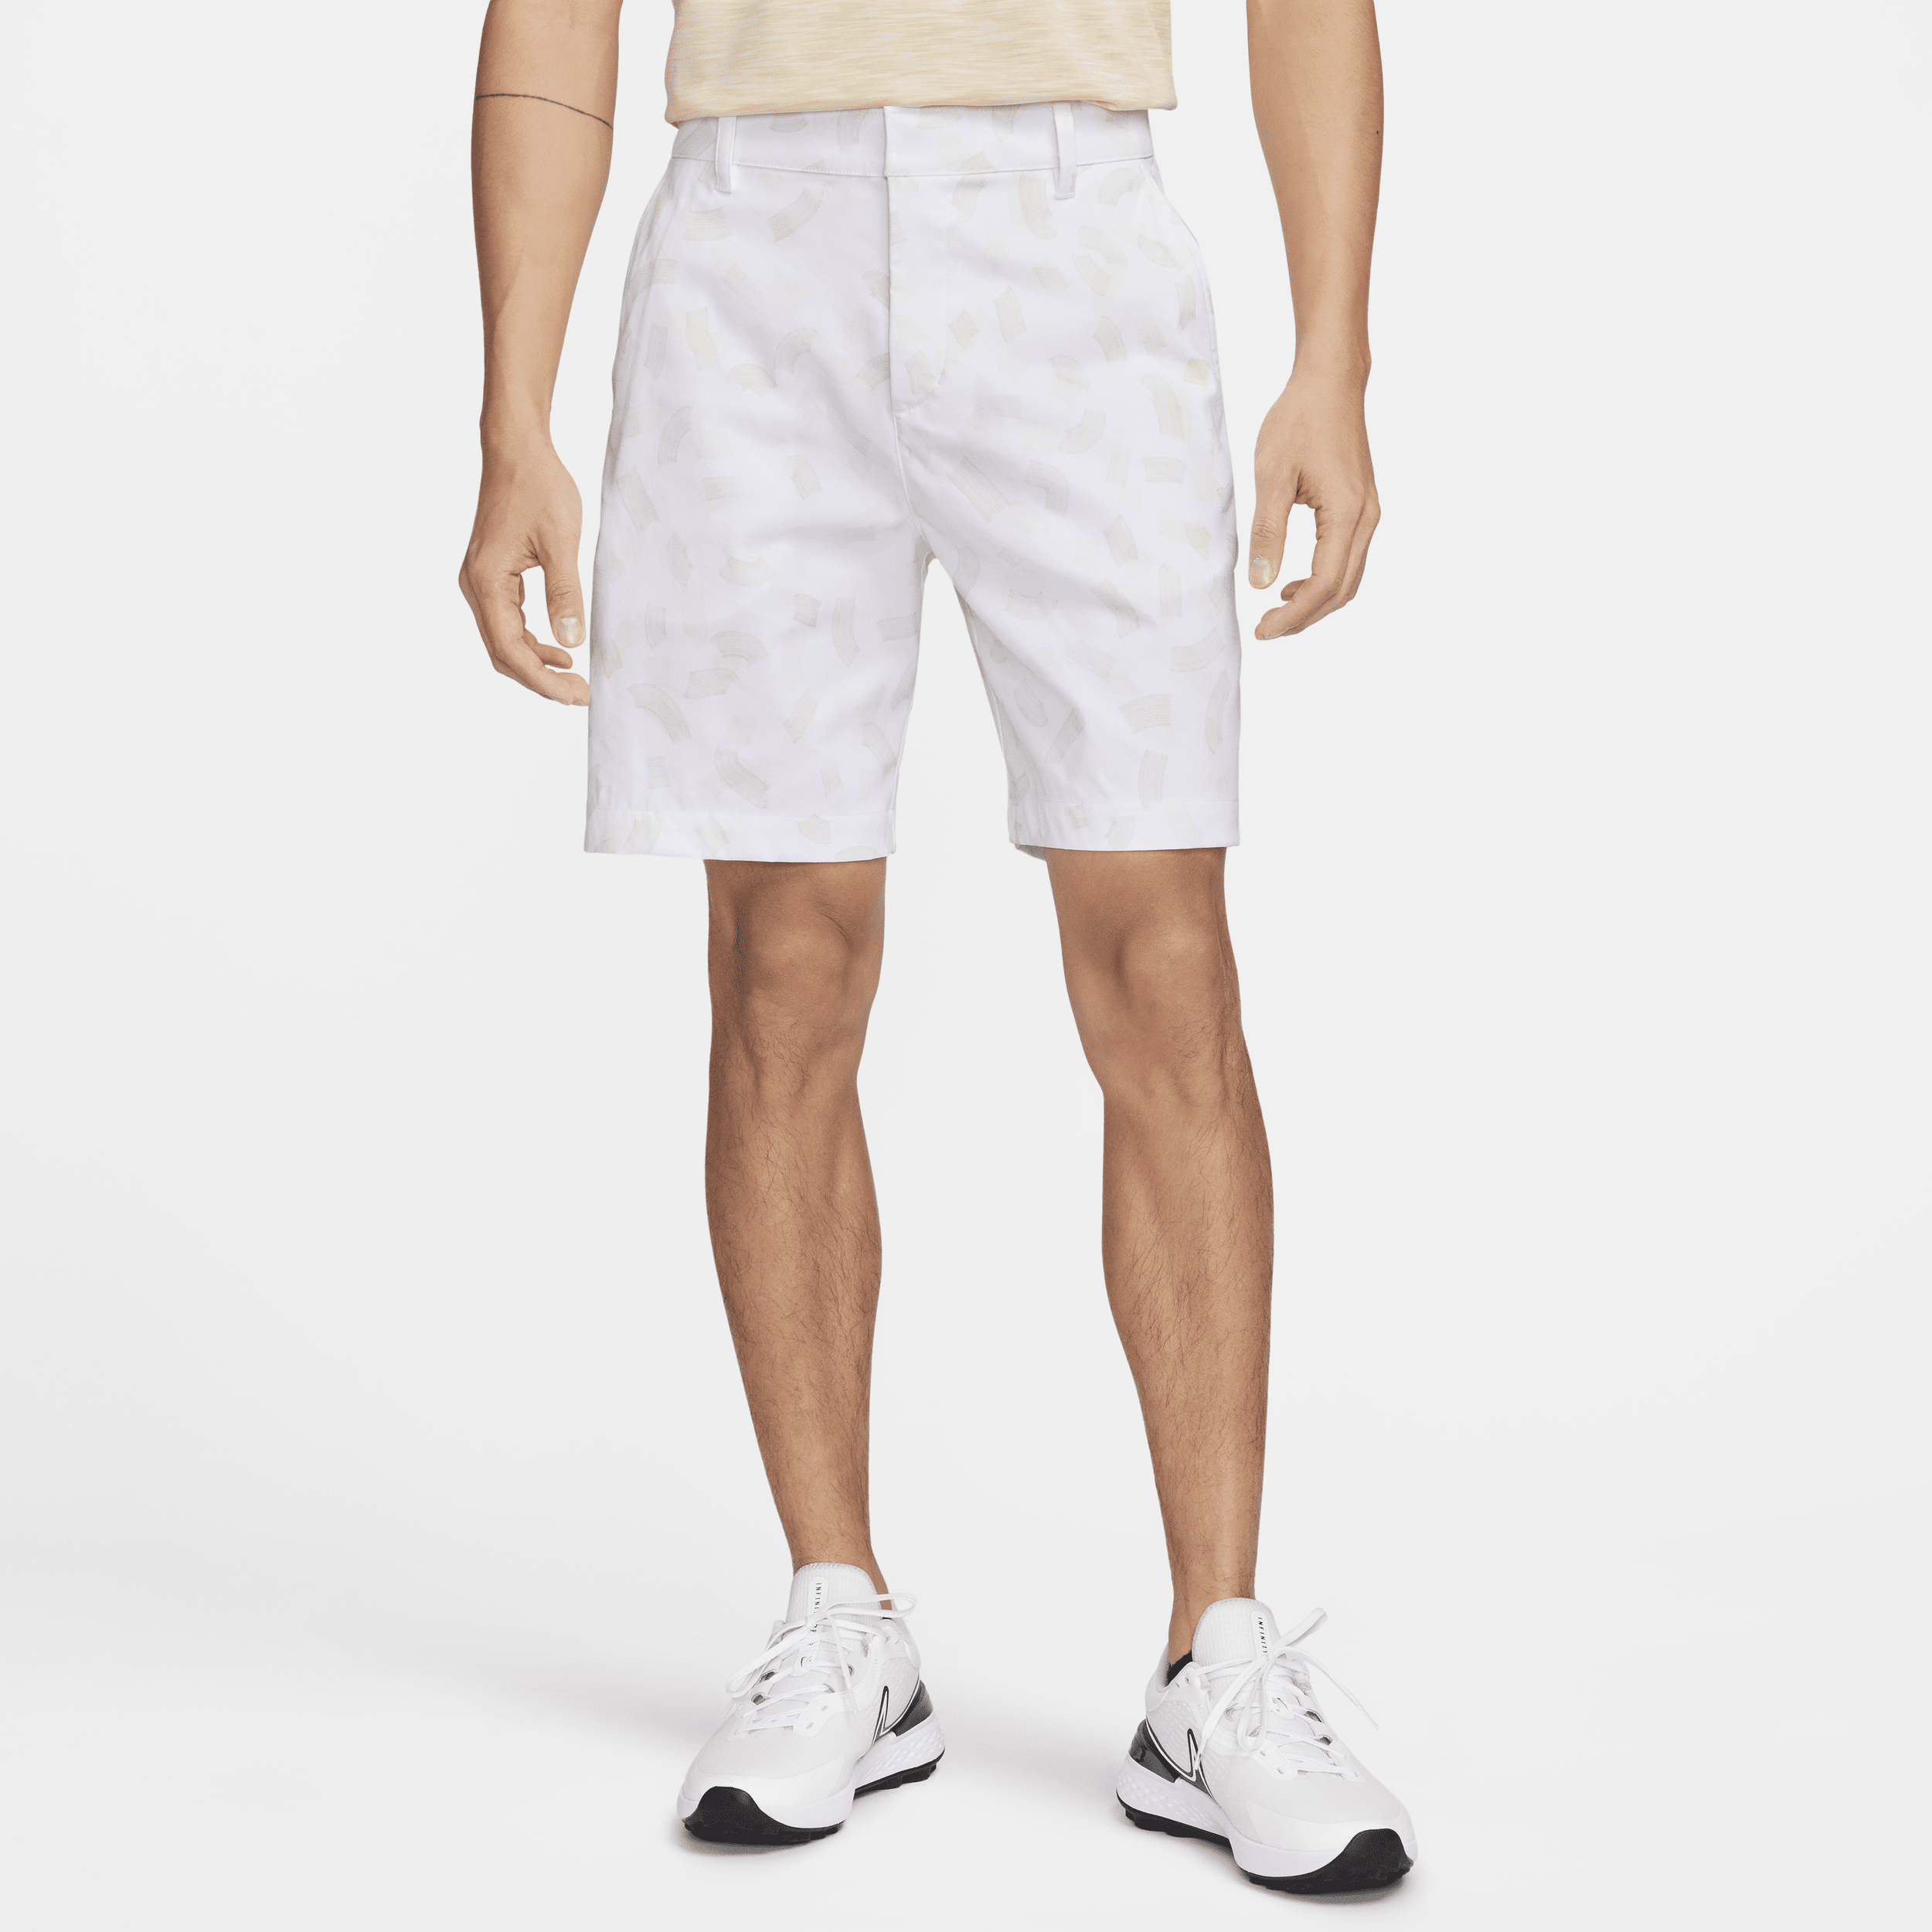 Nike Tour Pantalón corto chino de golf de 20 cm - Hombre - Blanco